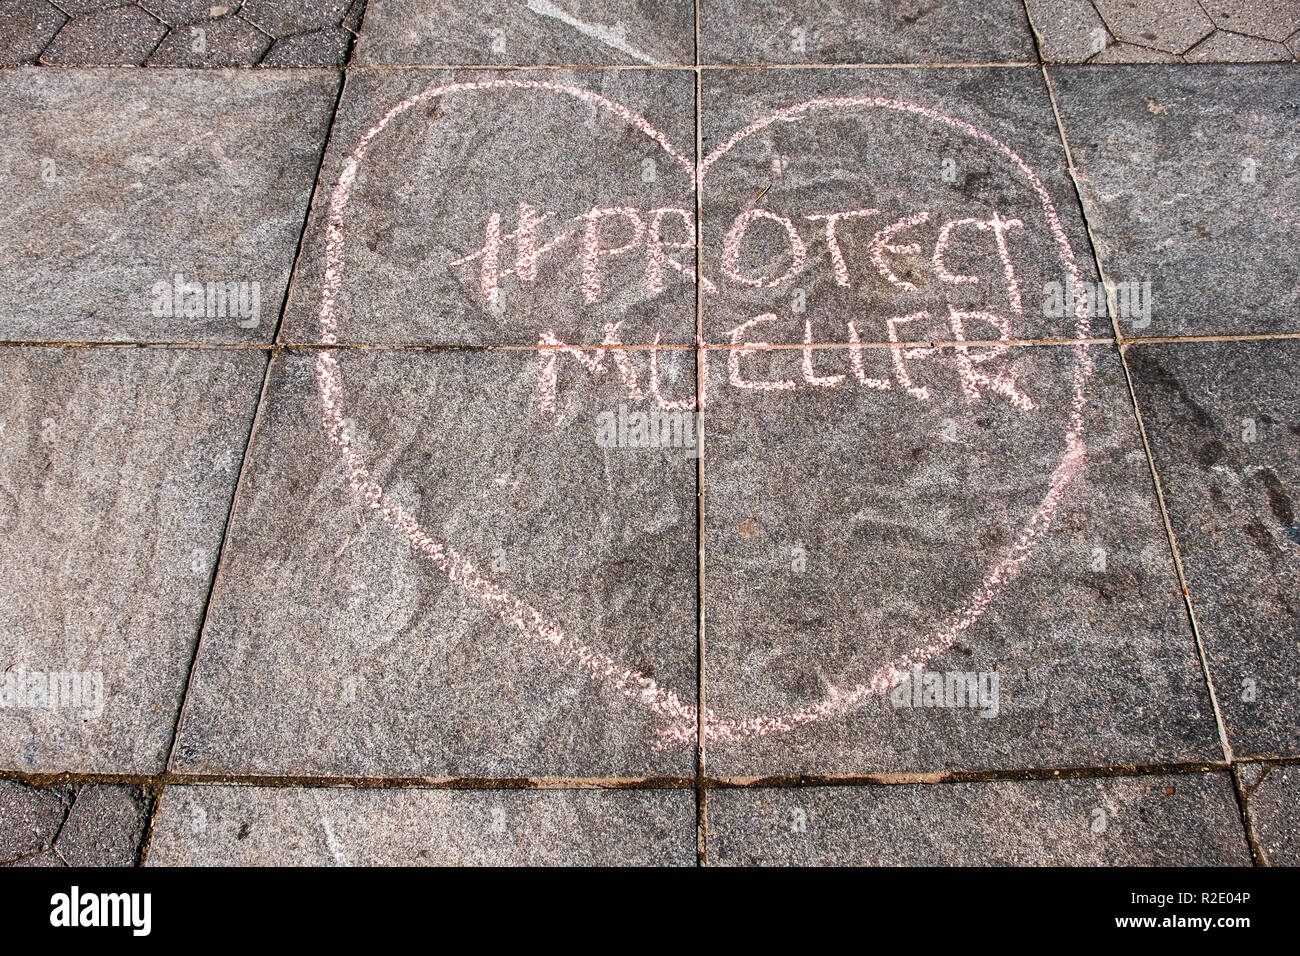 Una tiza escrito ion Washington Square Park instando a la gente a proteger la investigación contra Robert Mueller Trump Foto de stock